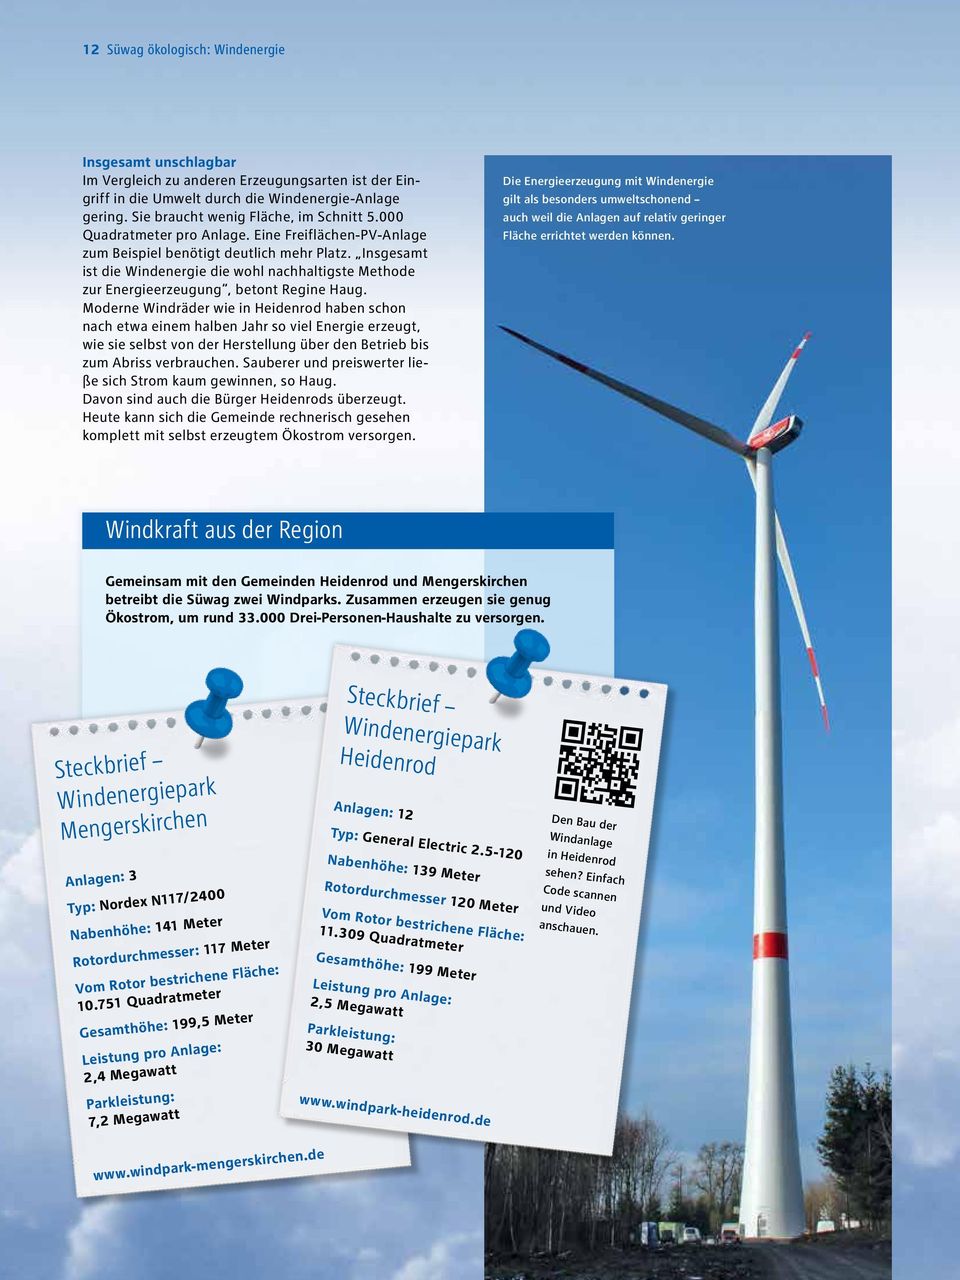 Insgesamt ist die Windenergie die wohl nachhaltigste Methode zur Energieerzeugung, betont Regine Haug.